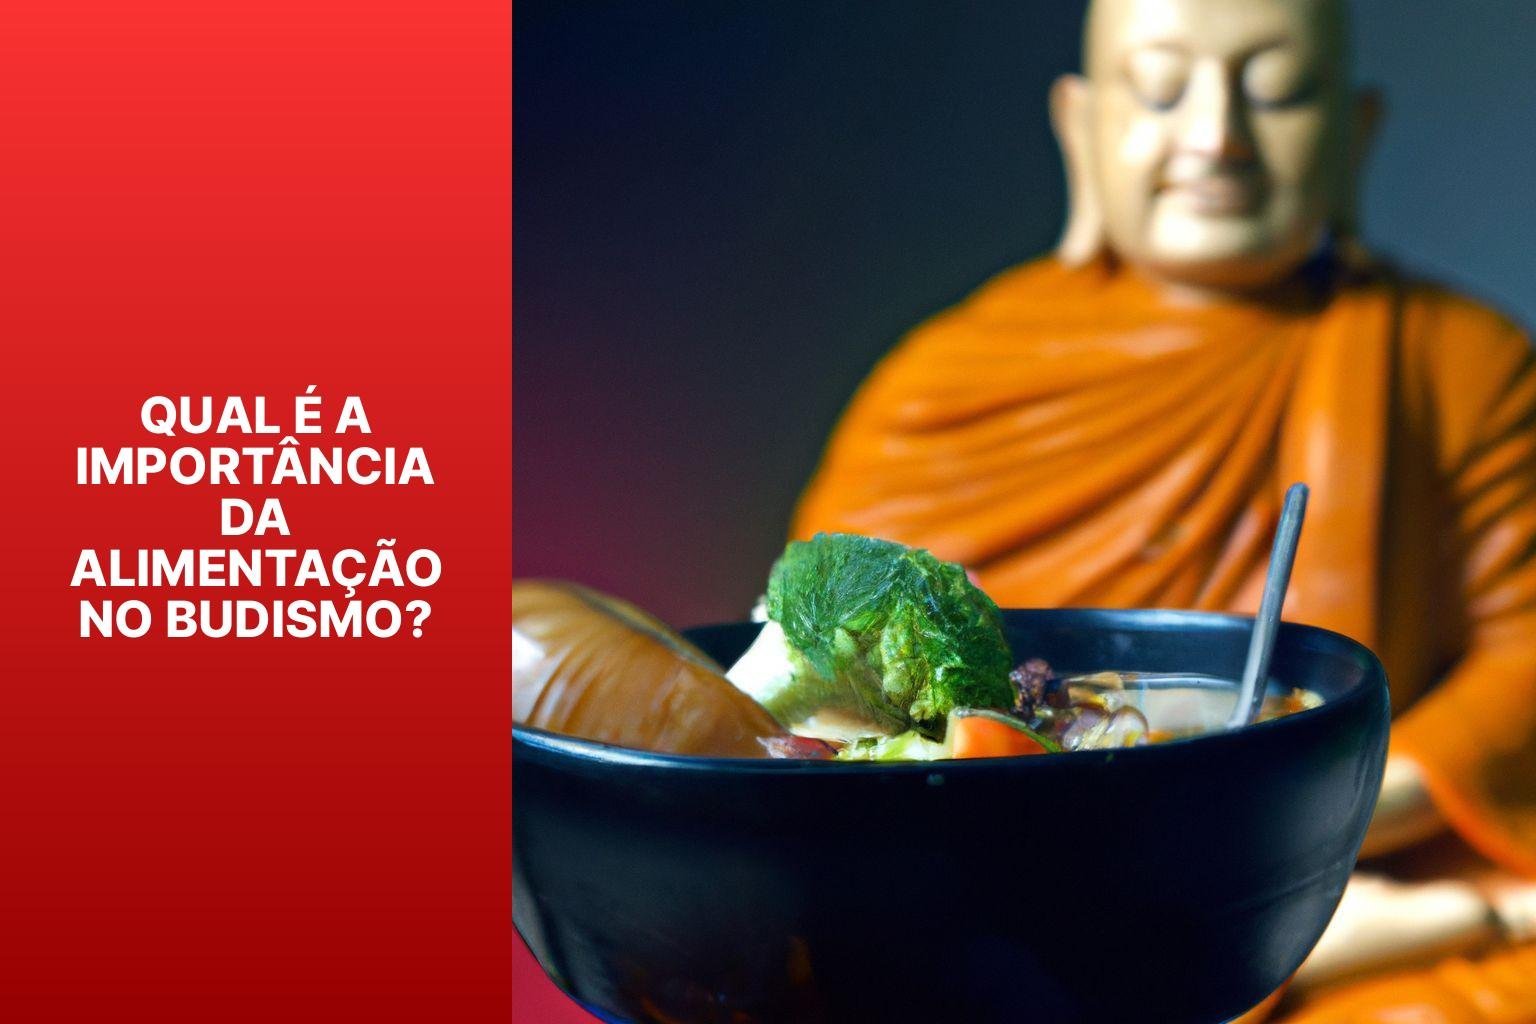 Qual é a importância da alimentação no Budismo? - Budismo Alimentação 